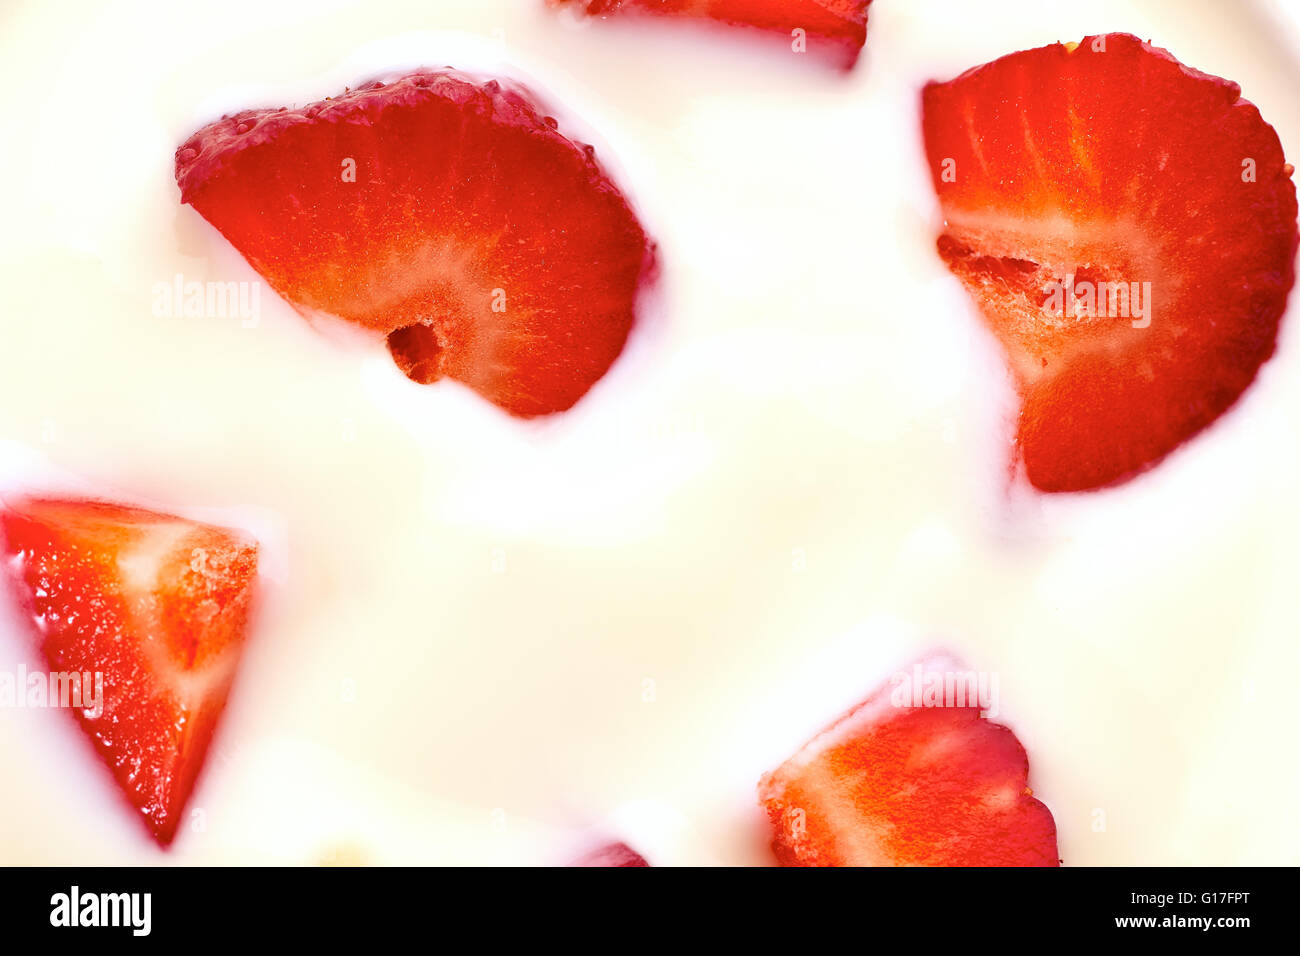 Sliced strawberries in yogurt Stock Photo